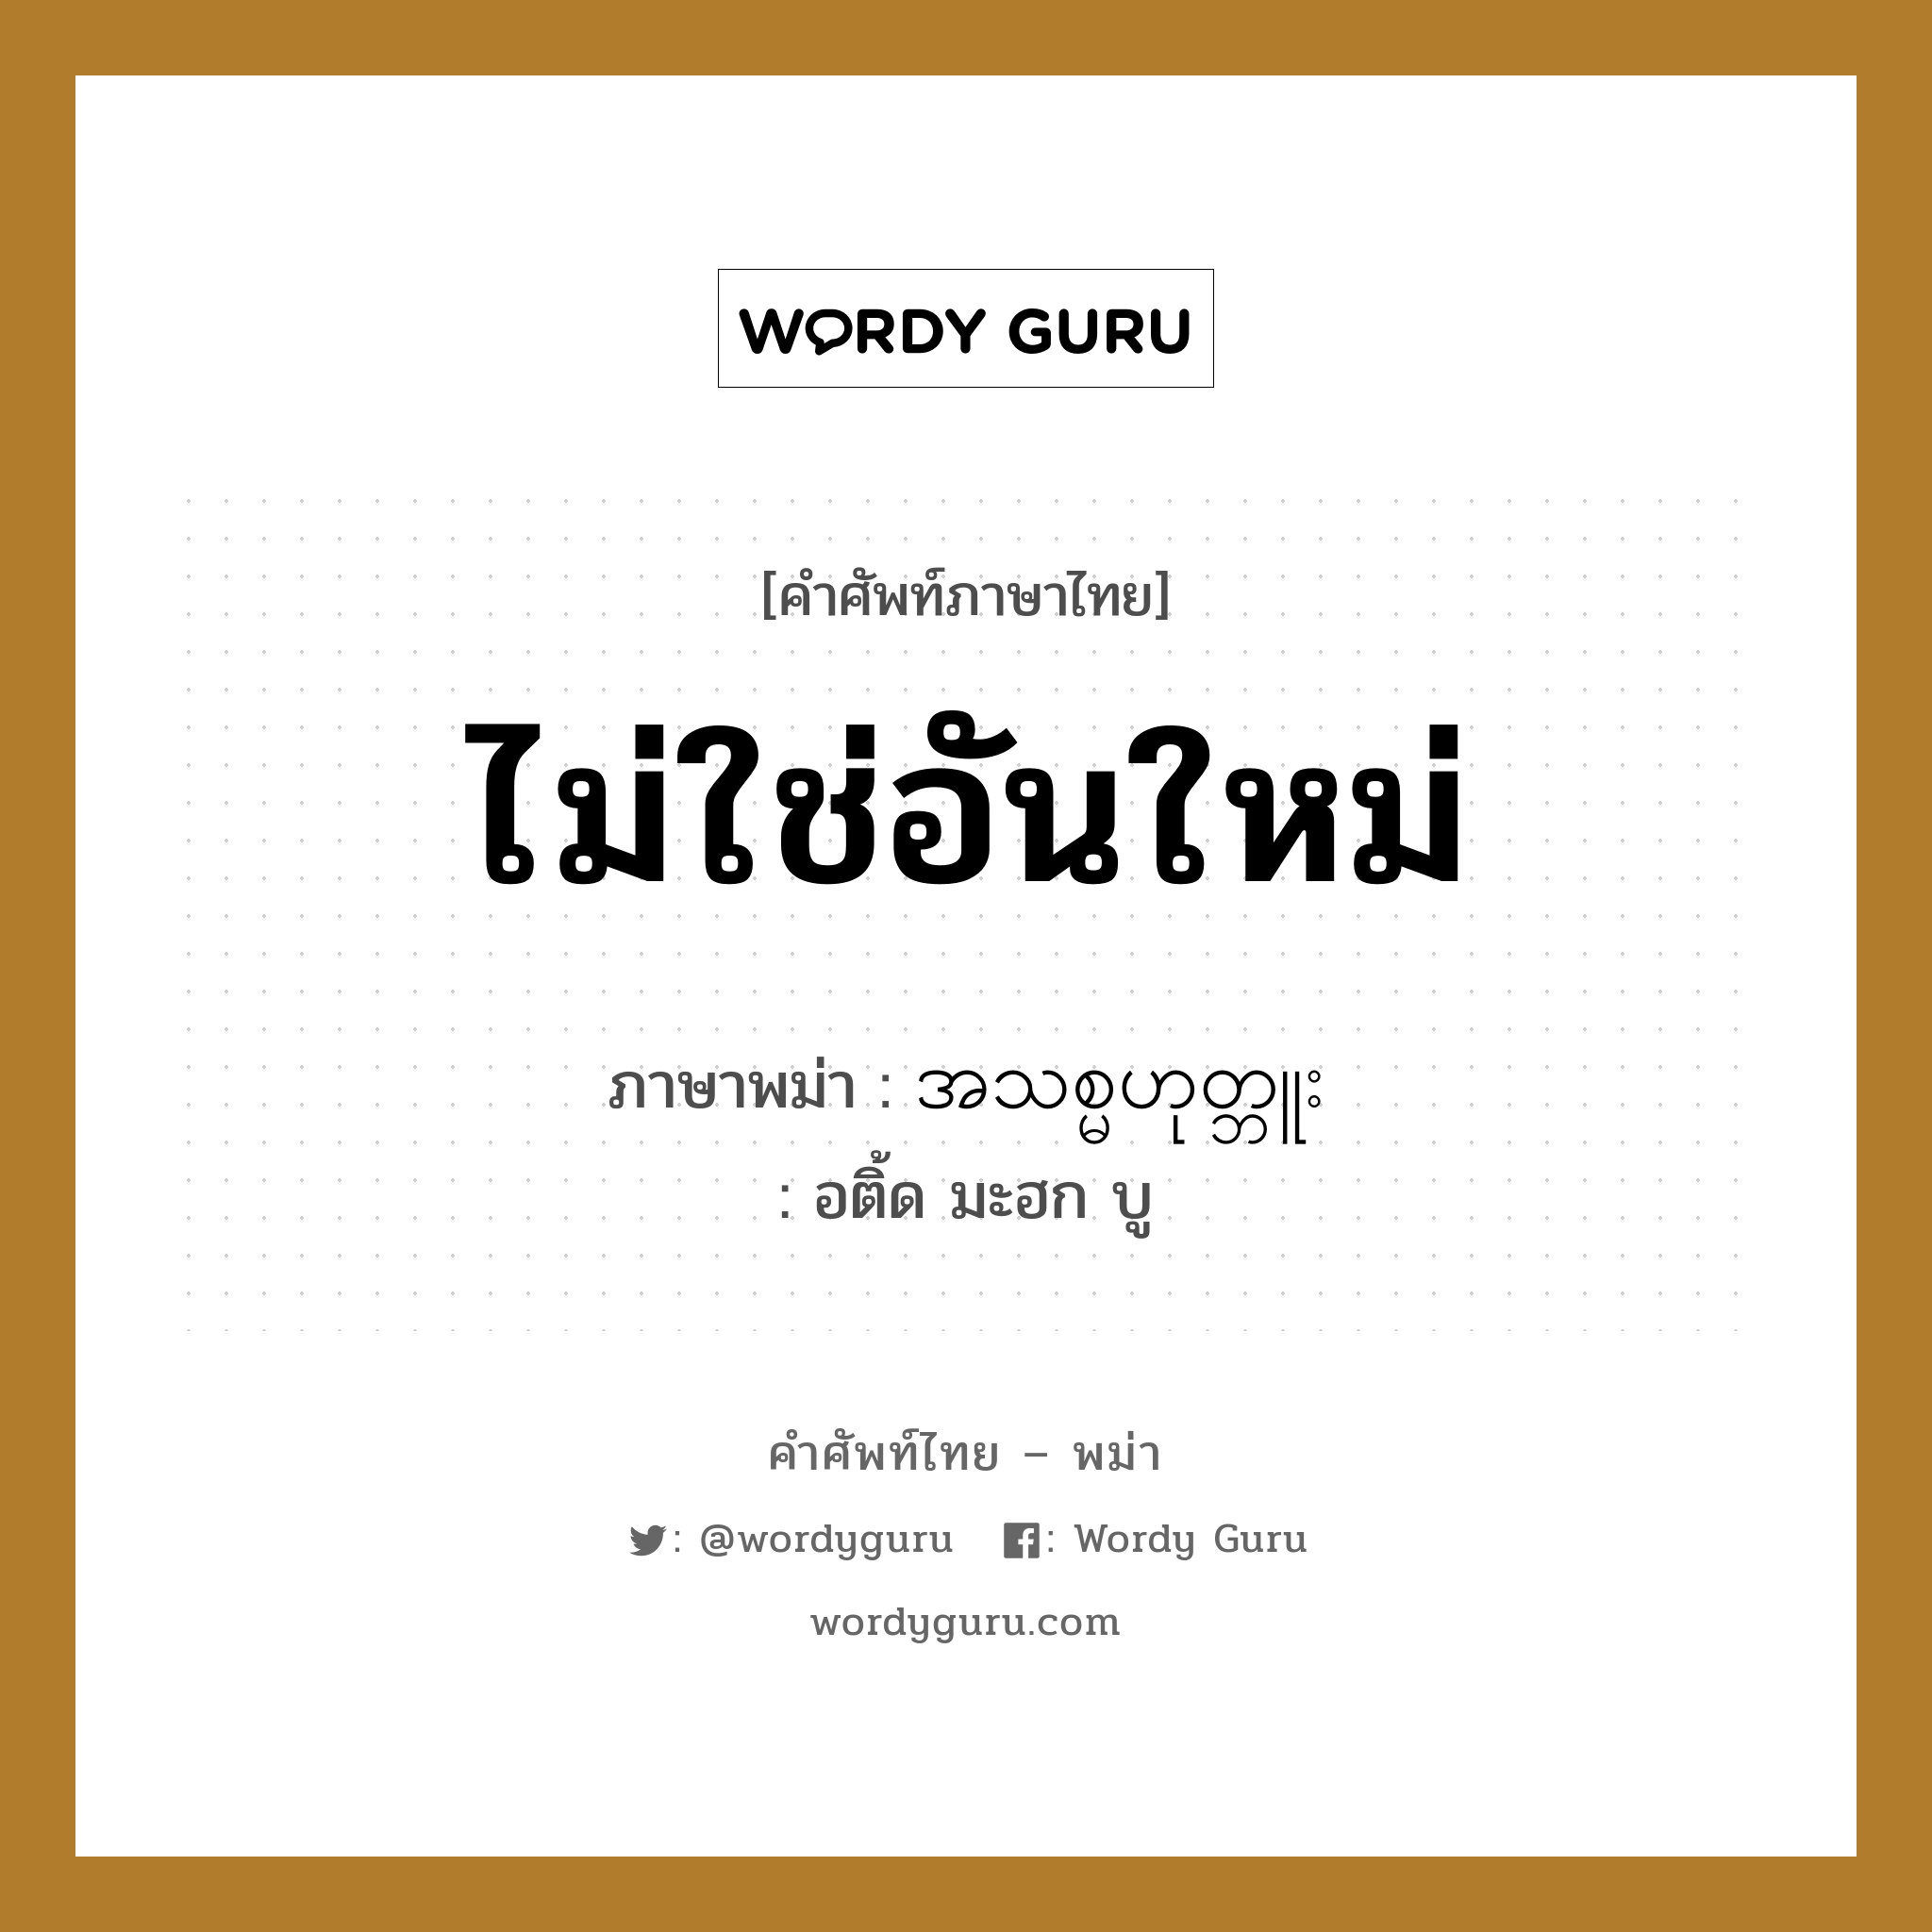 ไม่ใช่อันใหม่ ภาษาพม่าคืออะไร, คำศัพท์ภาษาไทย - พม่า ไม่ใช่อันใหม่ ภาษาพม่า အသစ္မဟုတ္ဘူး หมวด บทสนทนาการซื้อขาย อติ้ด มะฮก บู หมวด บทสนทนาการซื้อขาย